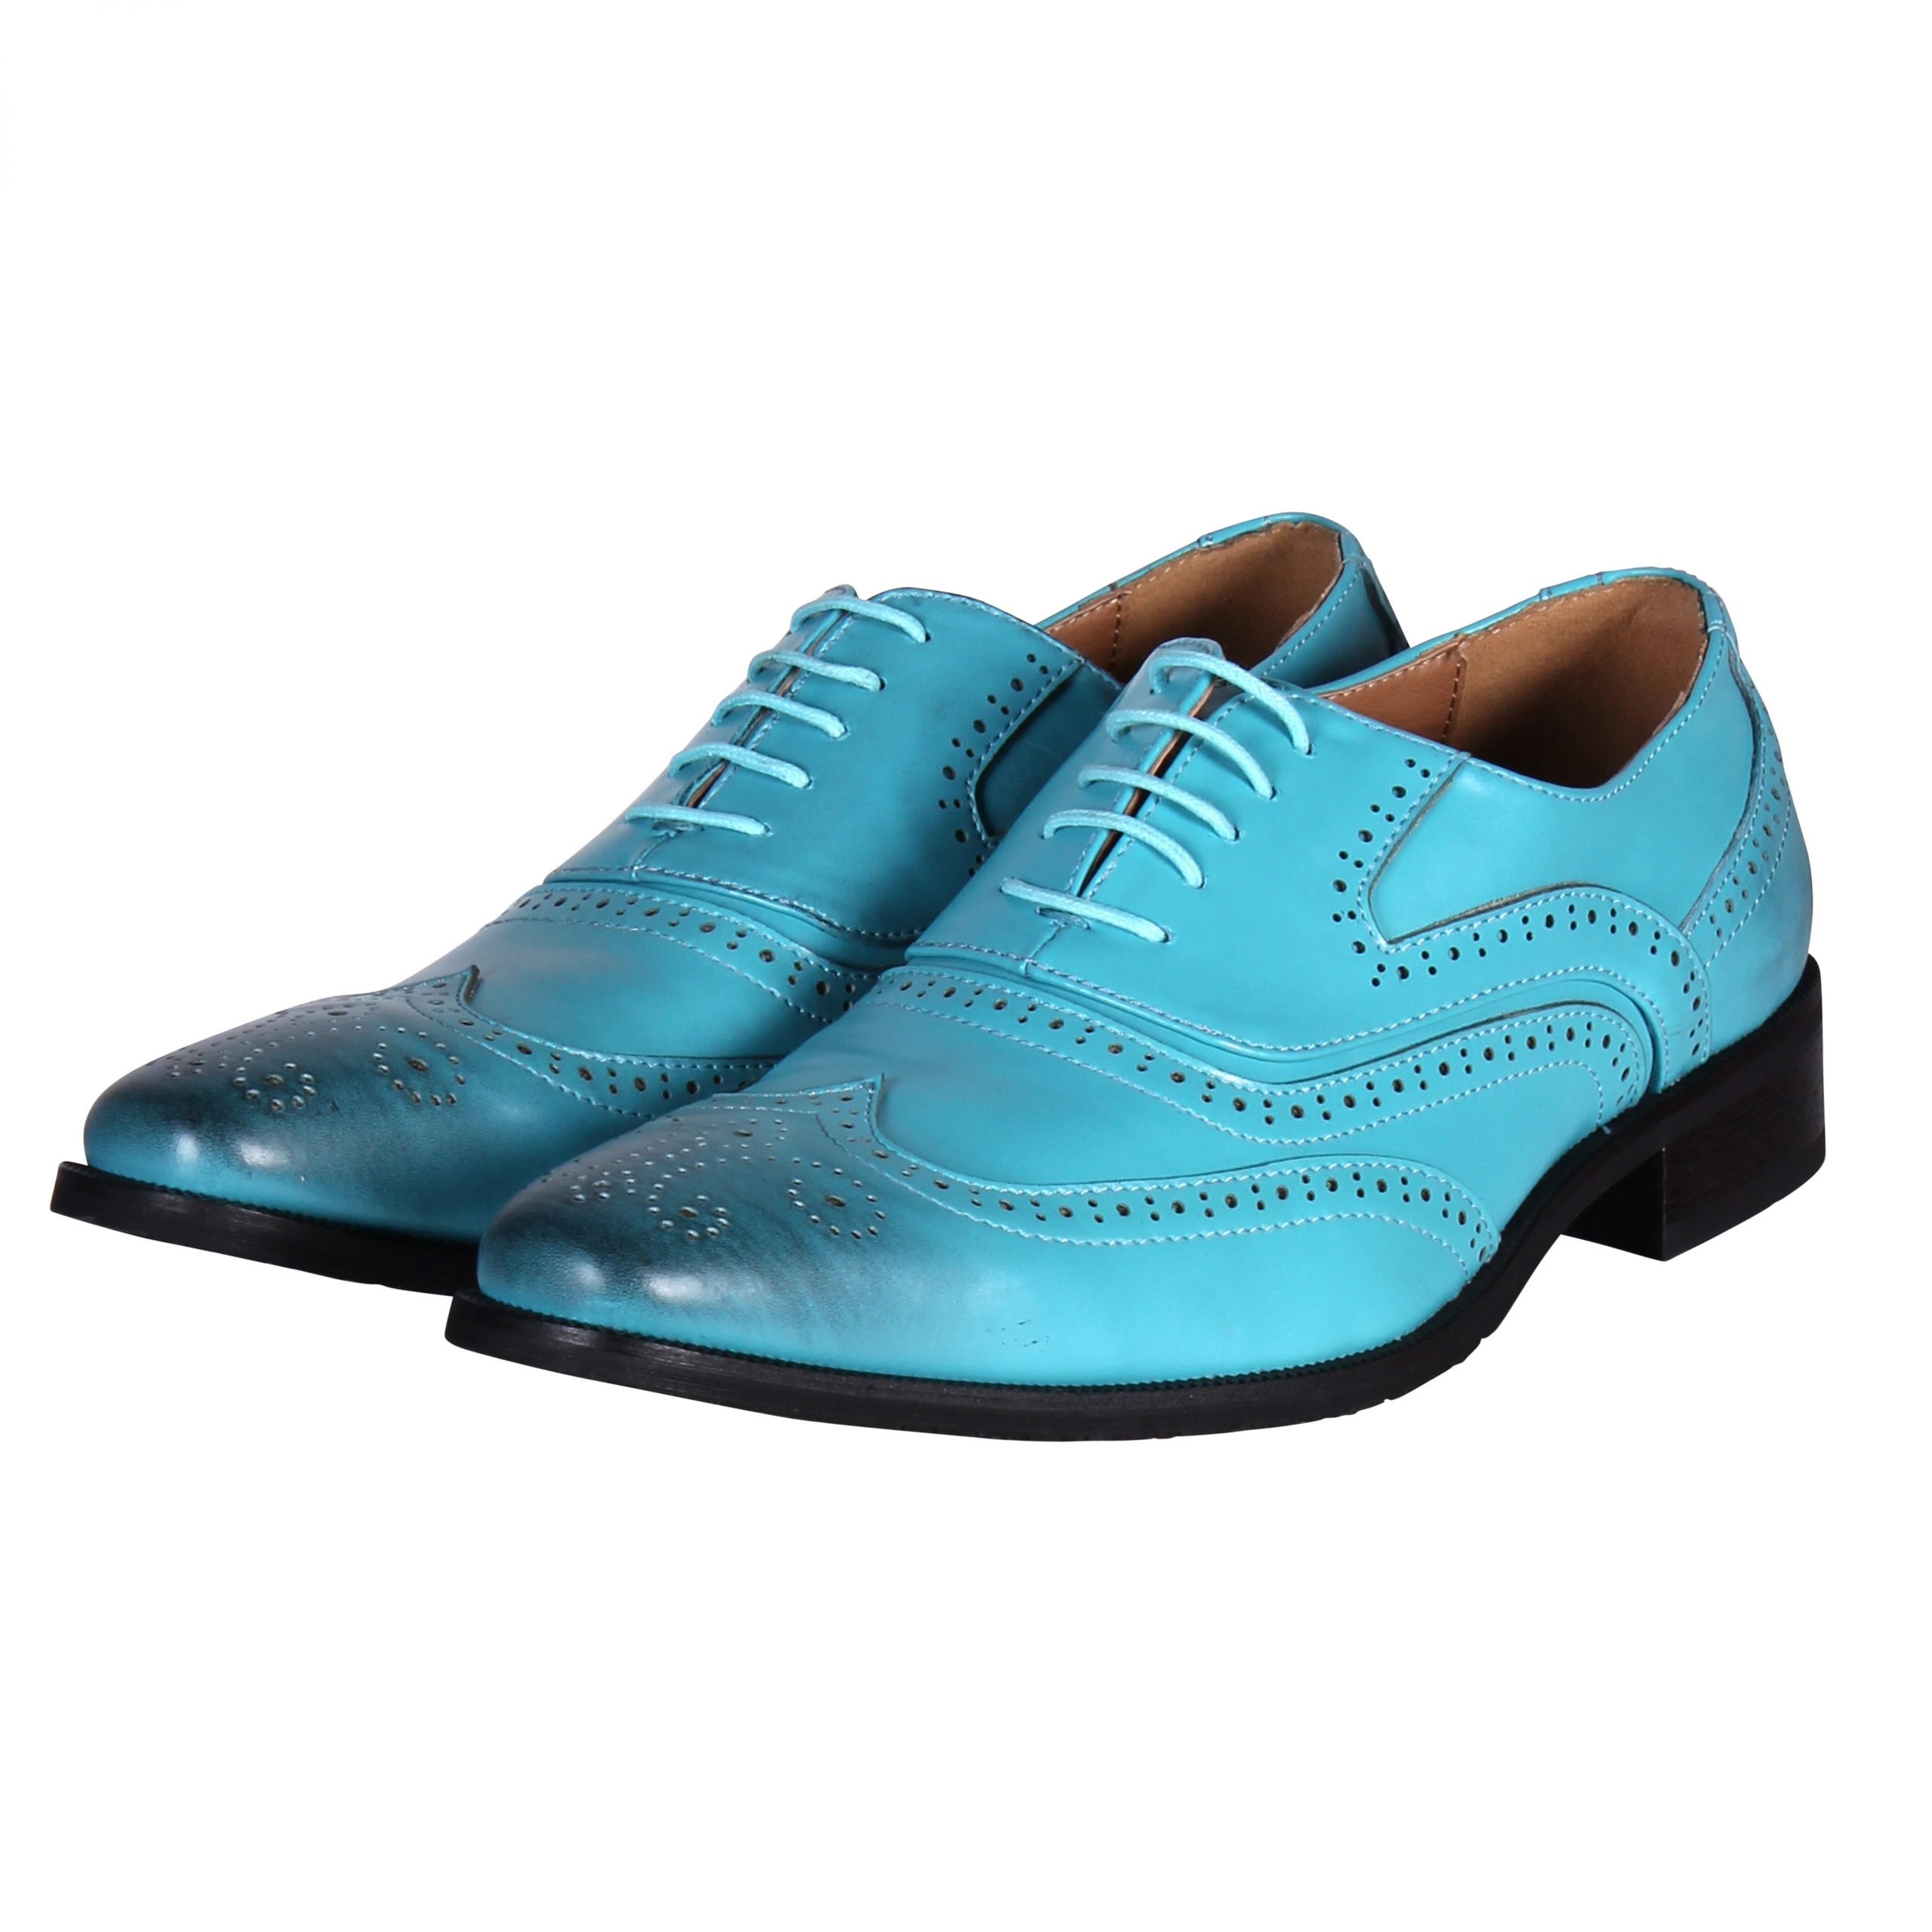 Giftig filosofie Investeren Heren schoenen colourfull turquoise | Fop en Feestwinkel